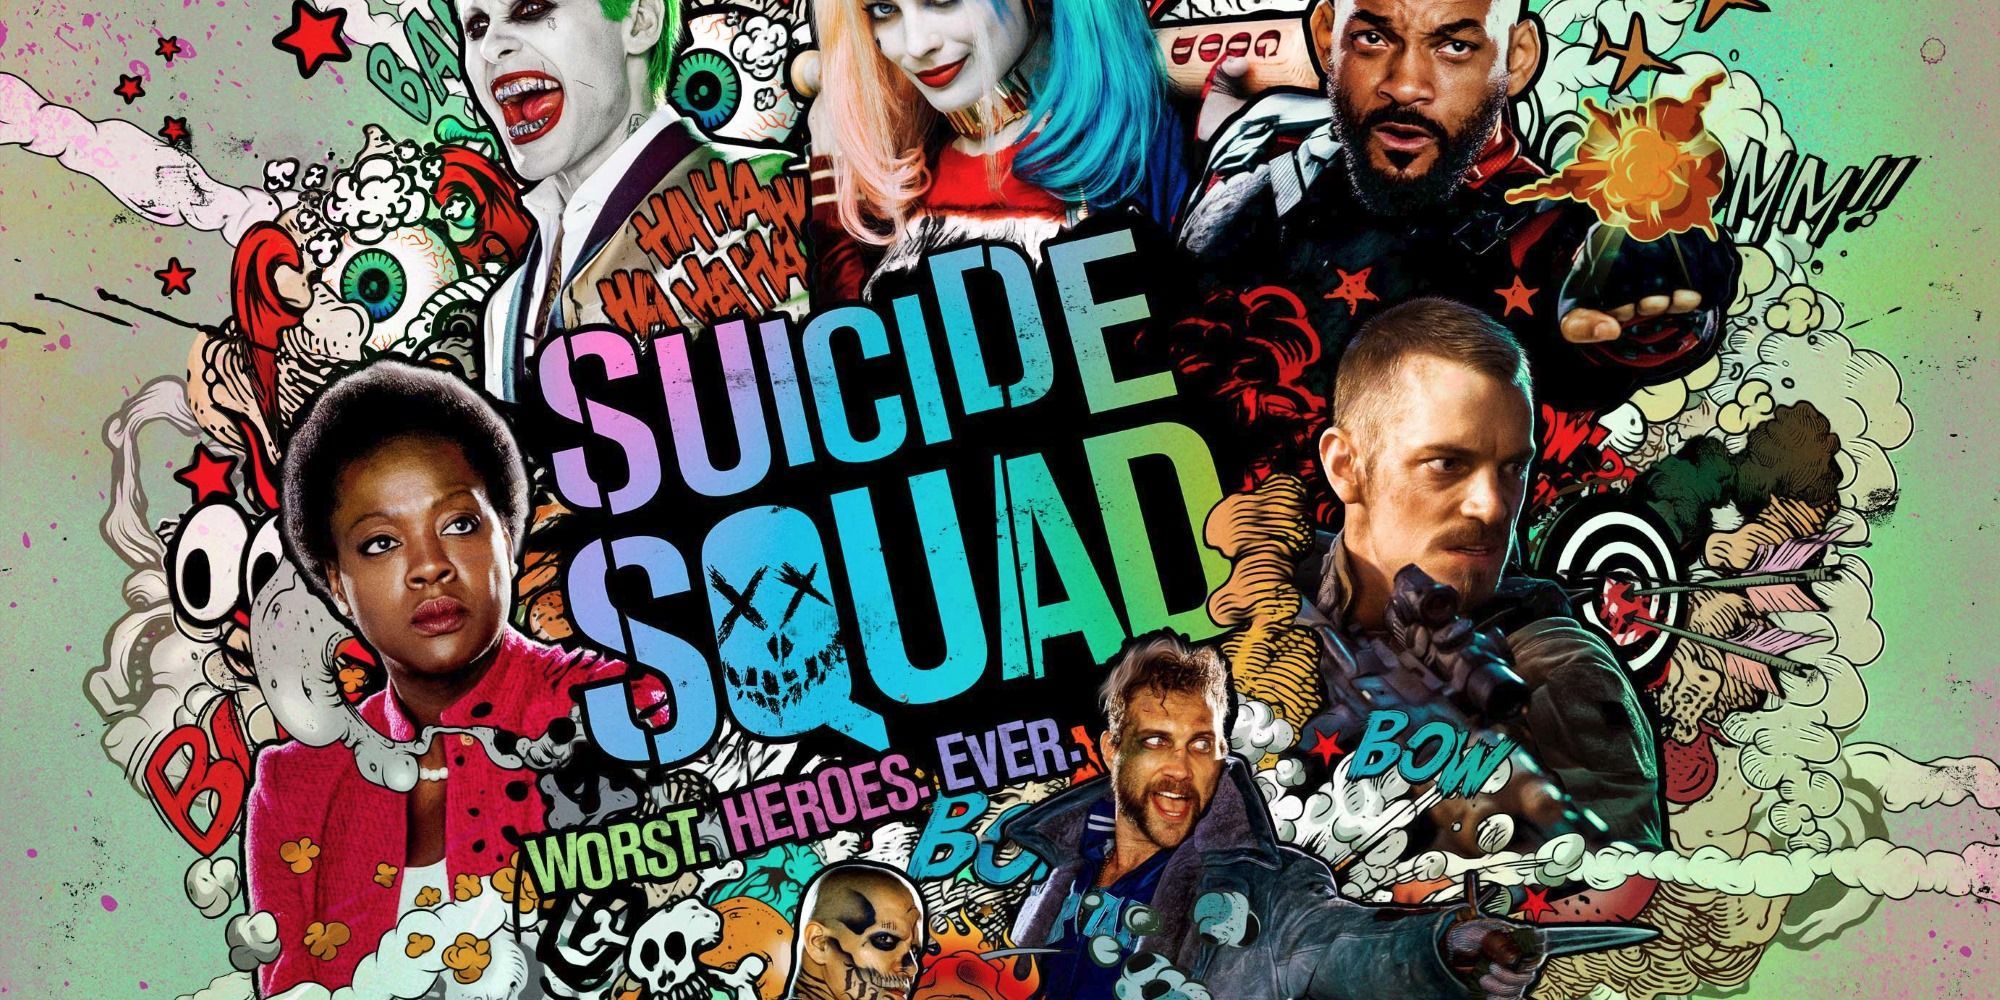 Suicide Squad wallpaper, Comics, HQ Suicide Squad pictureK Wallpaper 2019